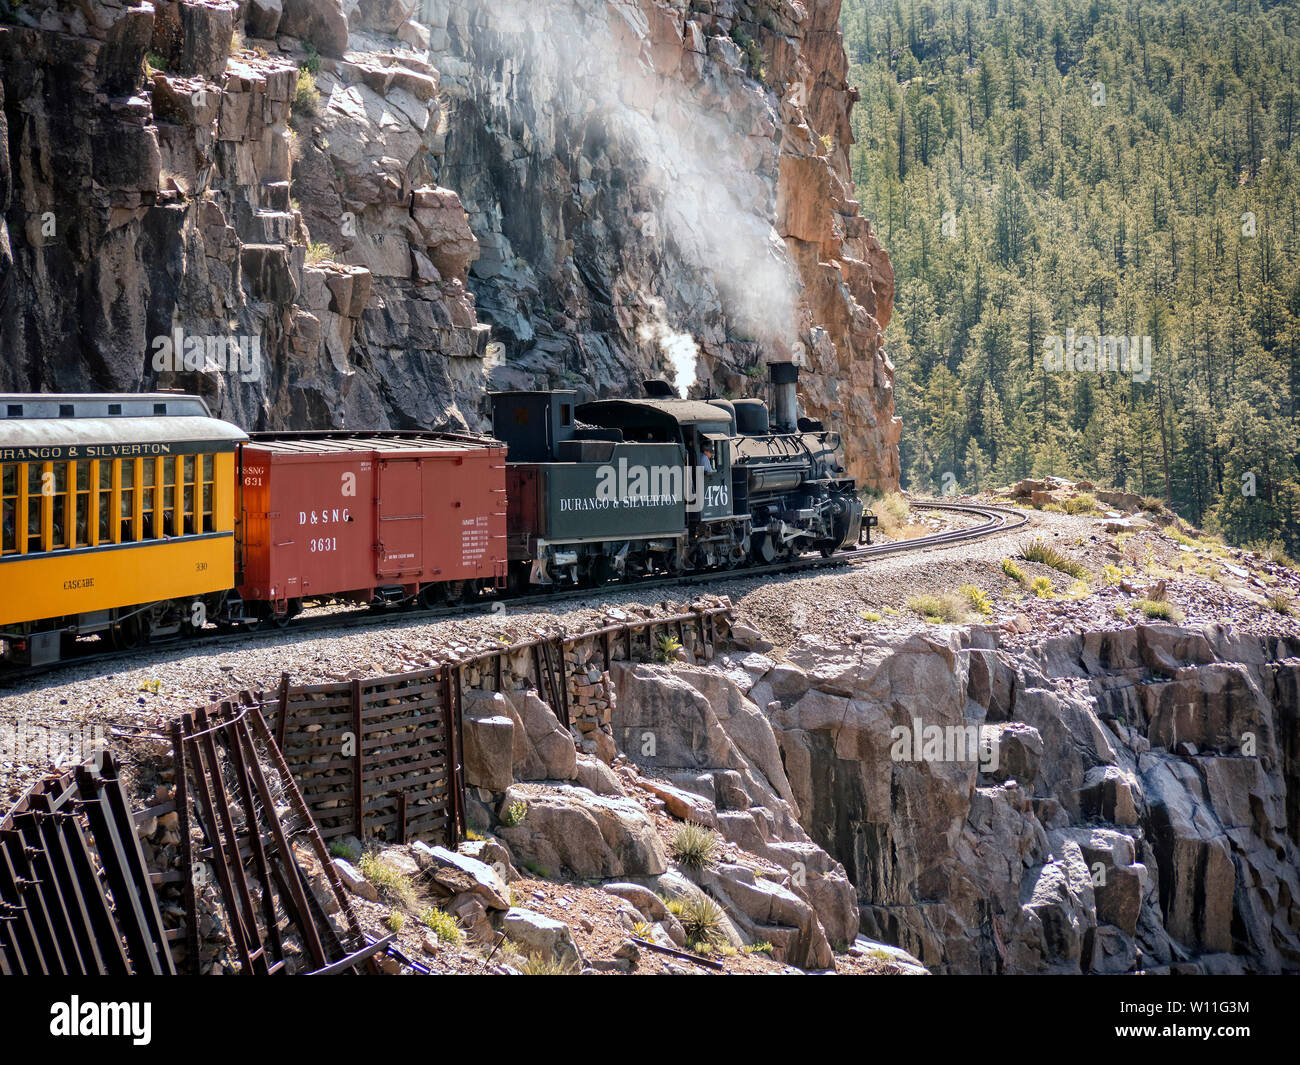 Durango & Silverton Railroad train makes it's way to Silverton Stock Photo